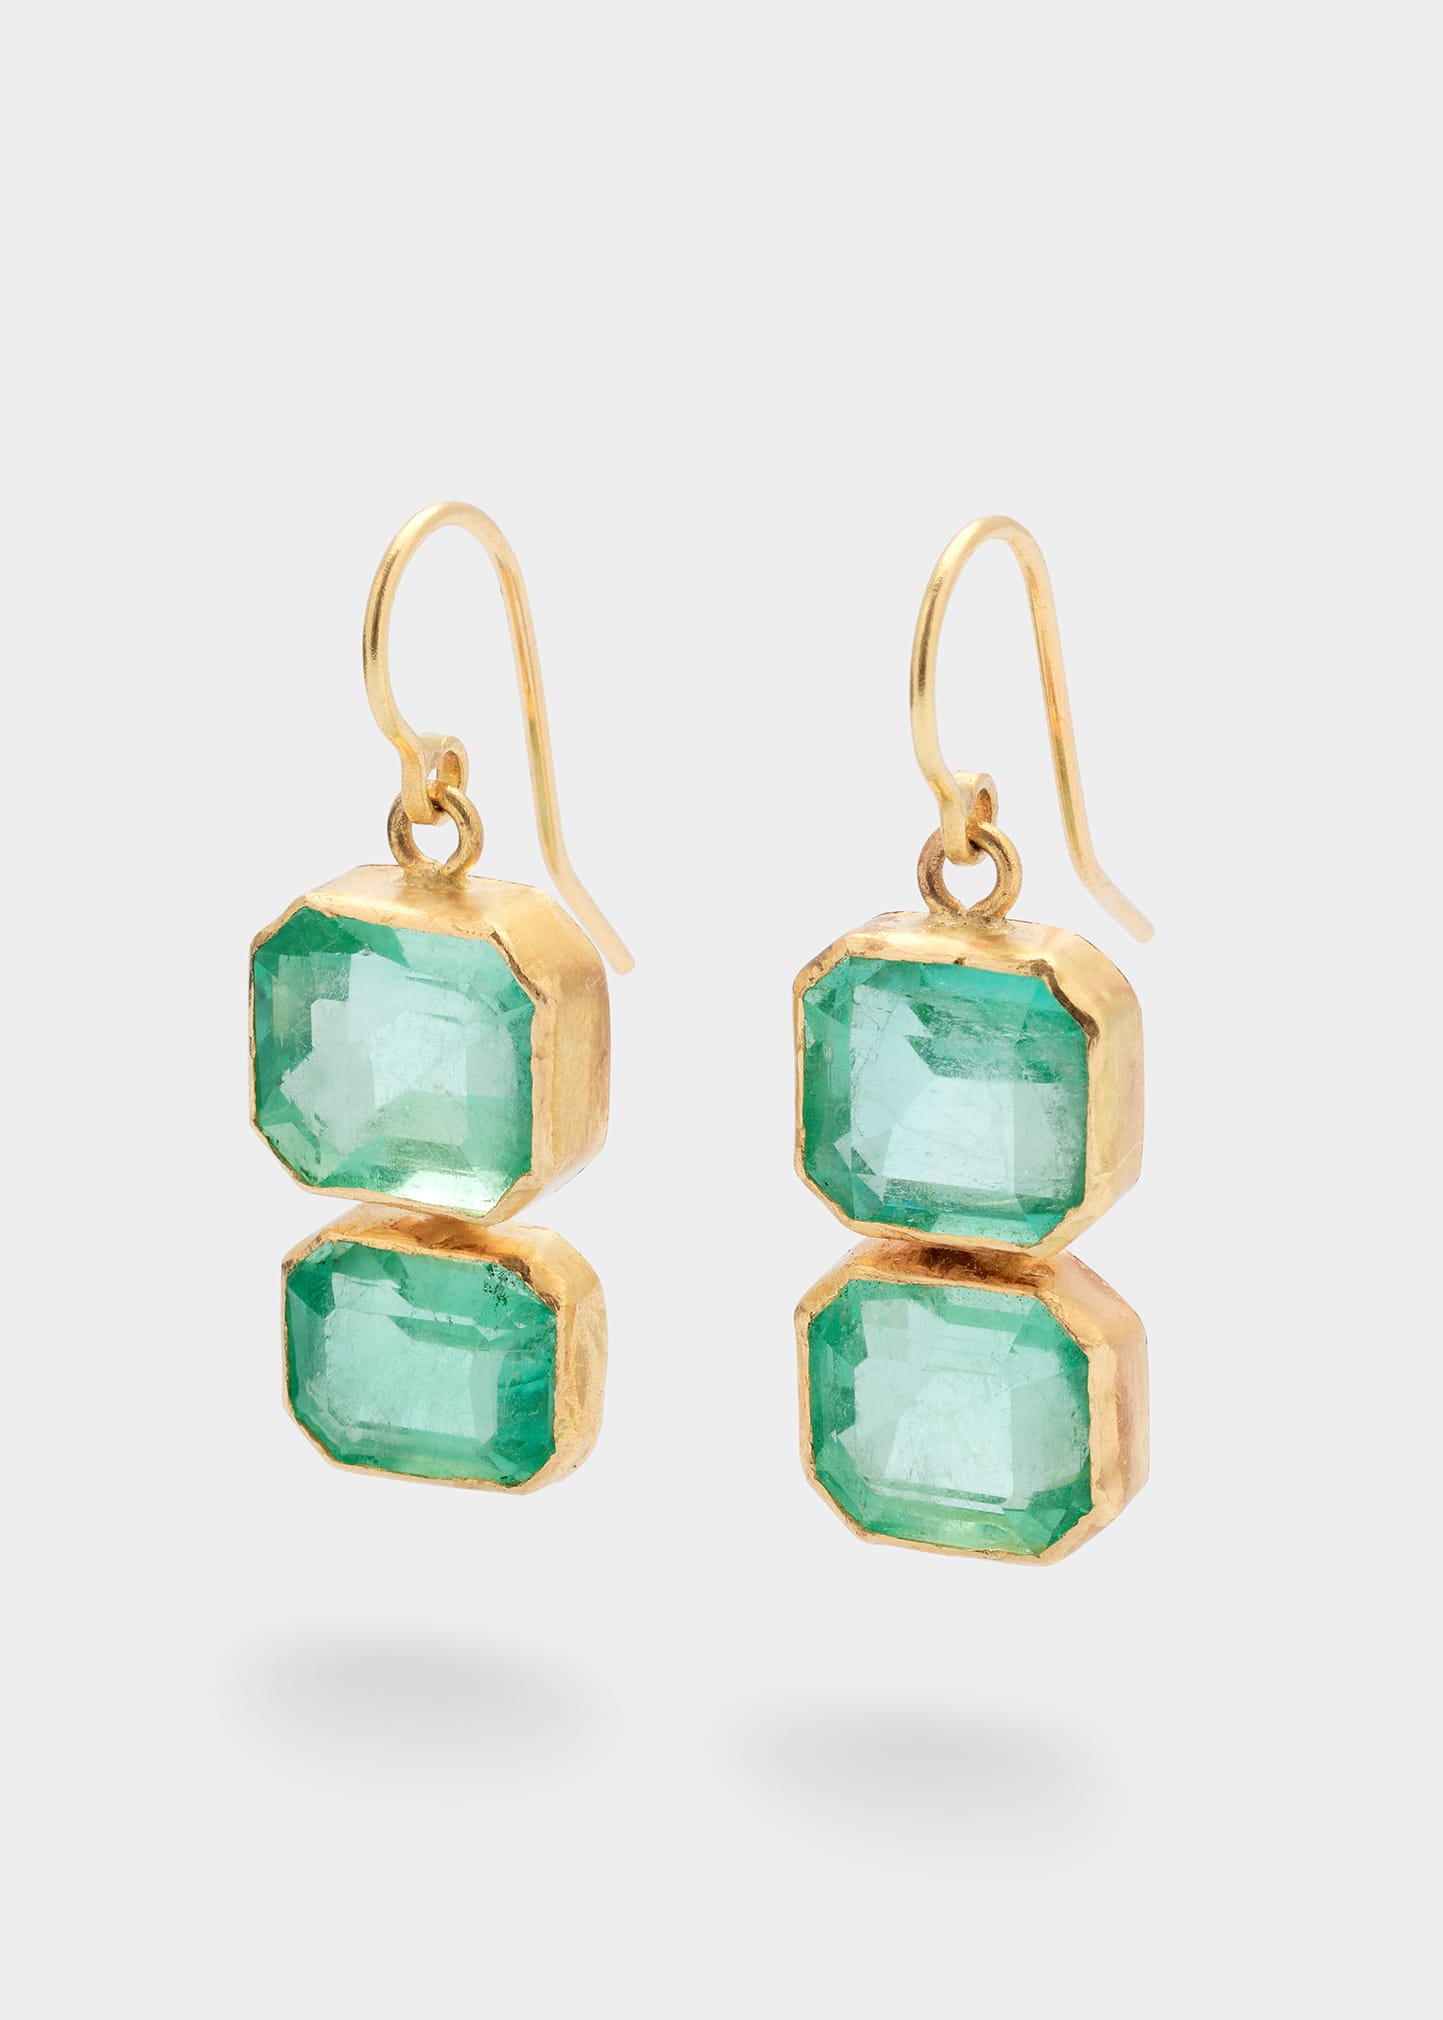 JUDY GEIB Bright Double Drop Colombian Emerald Earrings in 18K Gold